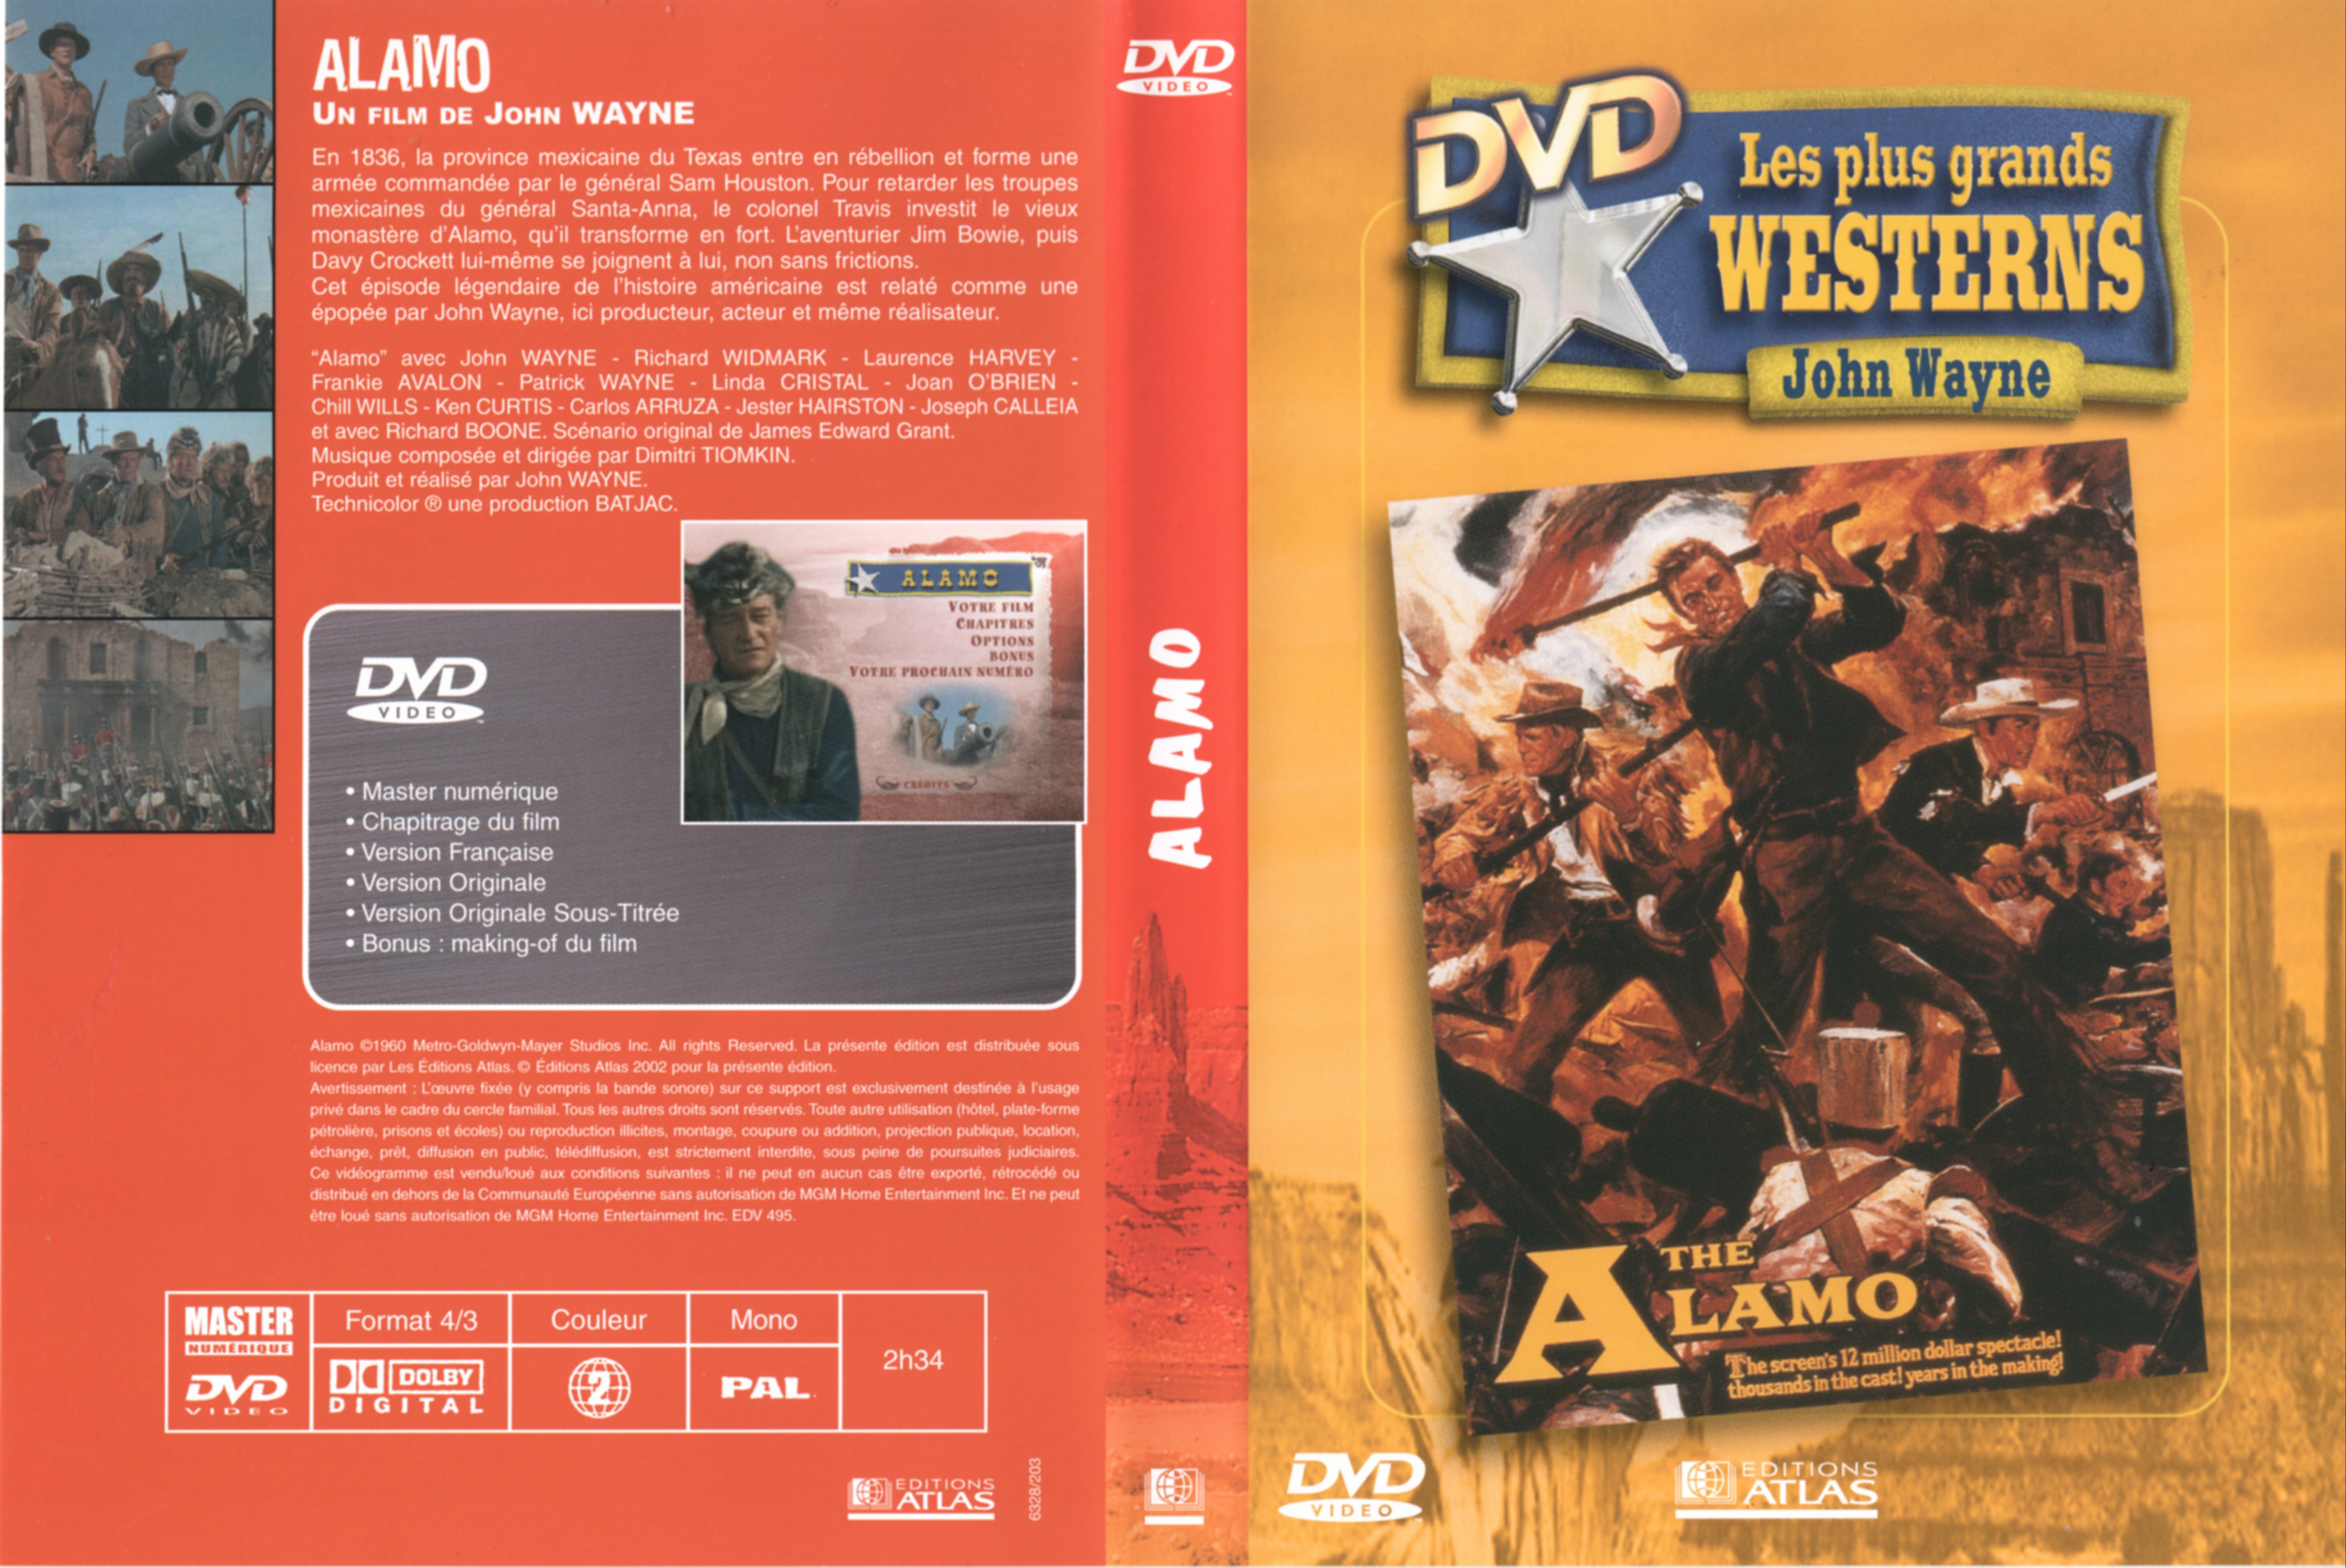 Jaquette DVD Alamo v2